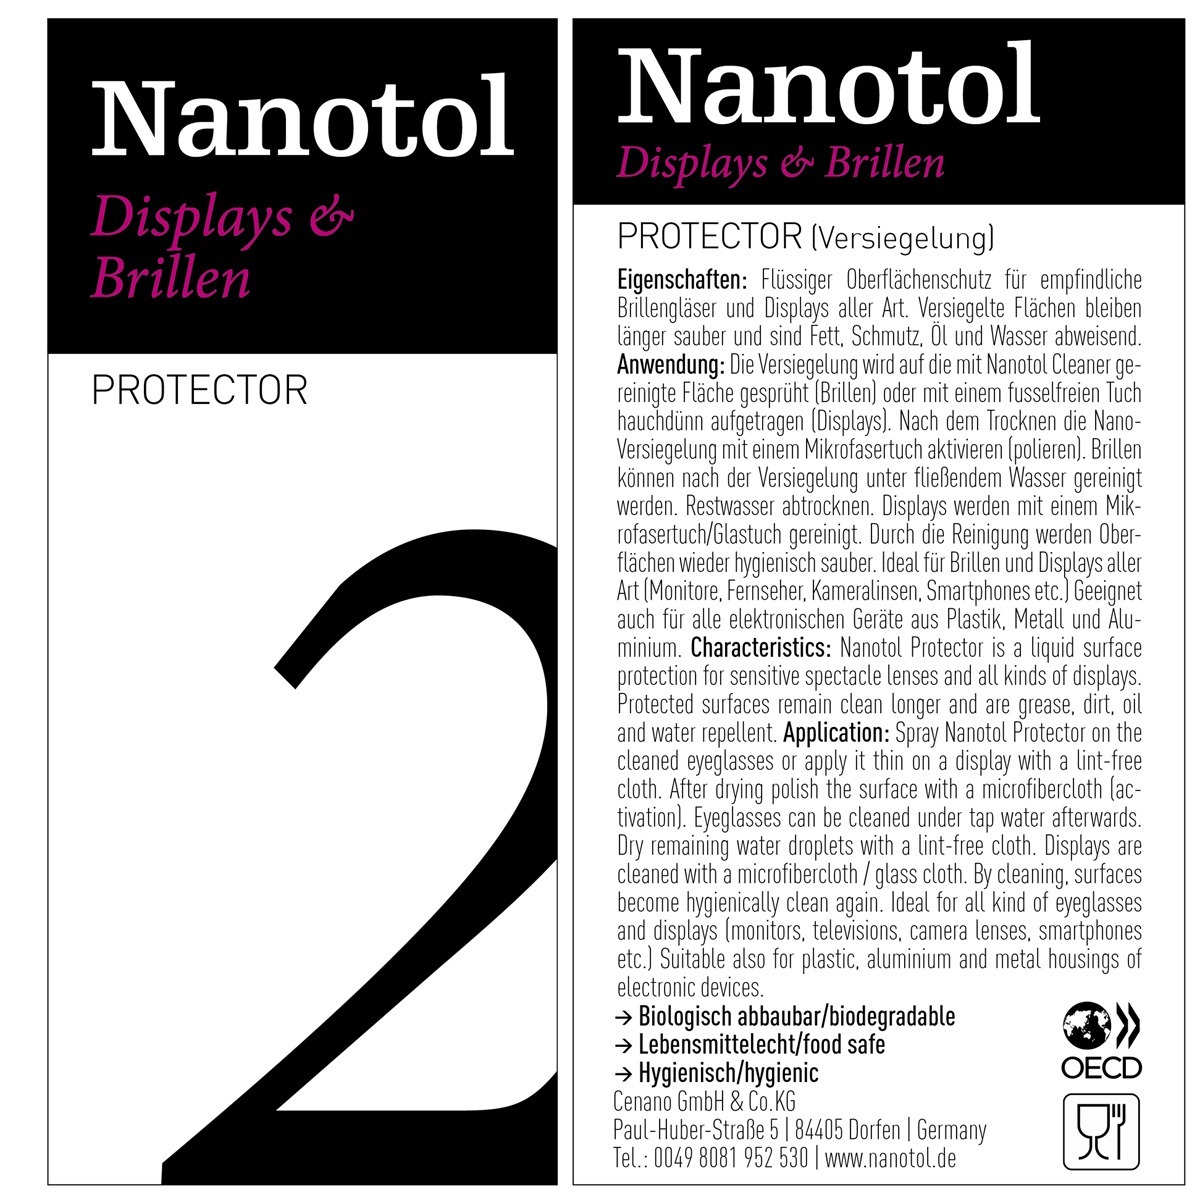 Etikett von Nanotol Displays und Brillen Protector